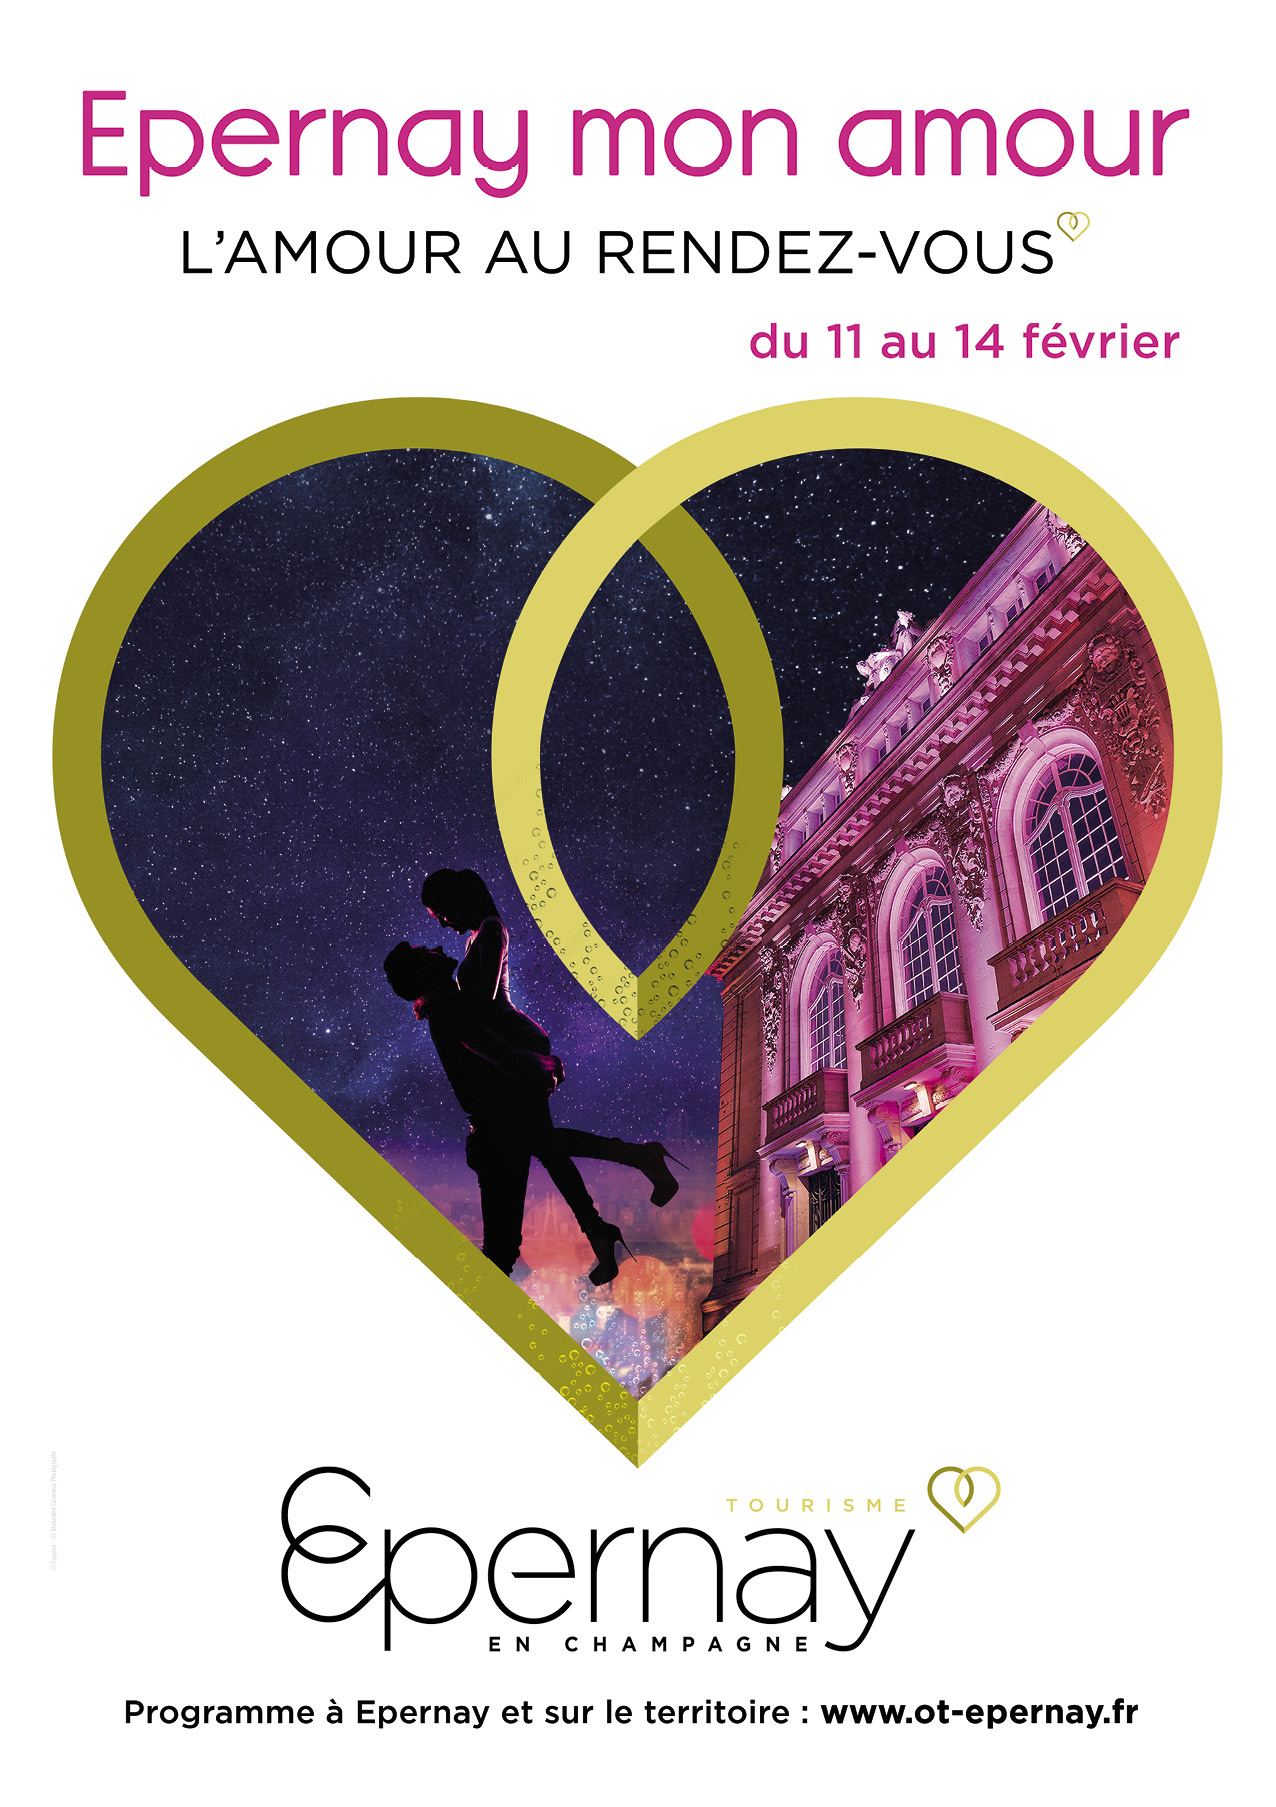 Epernay : « Epernay Mon Amour », la ville vous déclare sa flamme à l’occasion de la Saint-Valentin